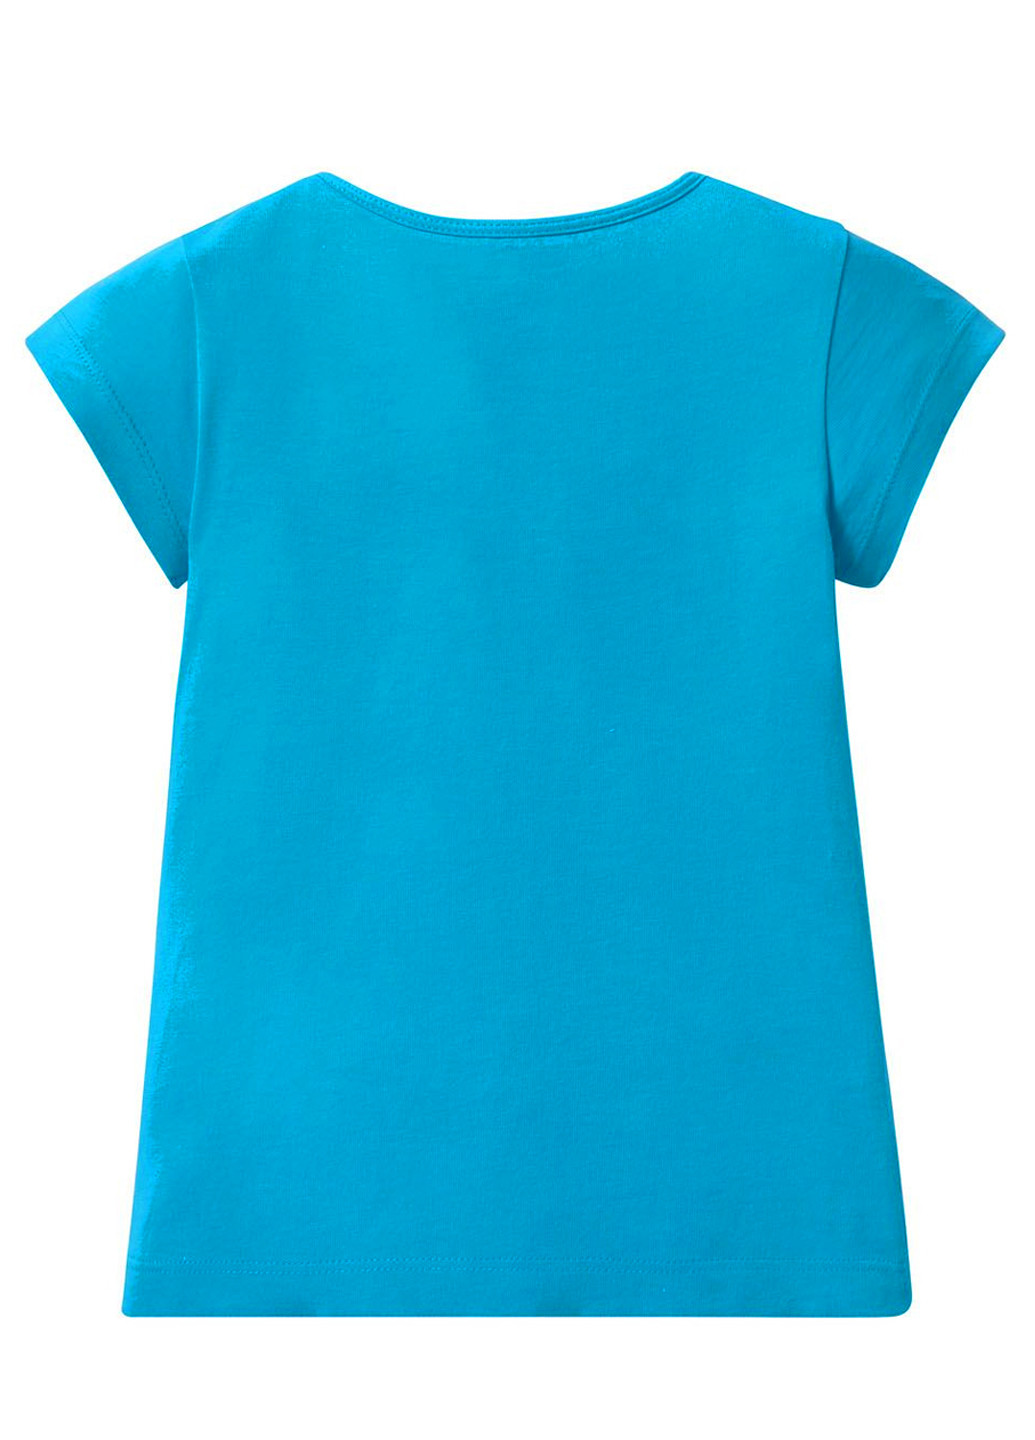 Голубая футболки для девочки (3 шт) Smurfs